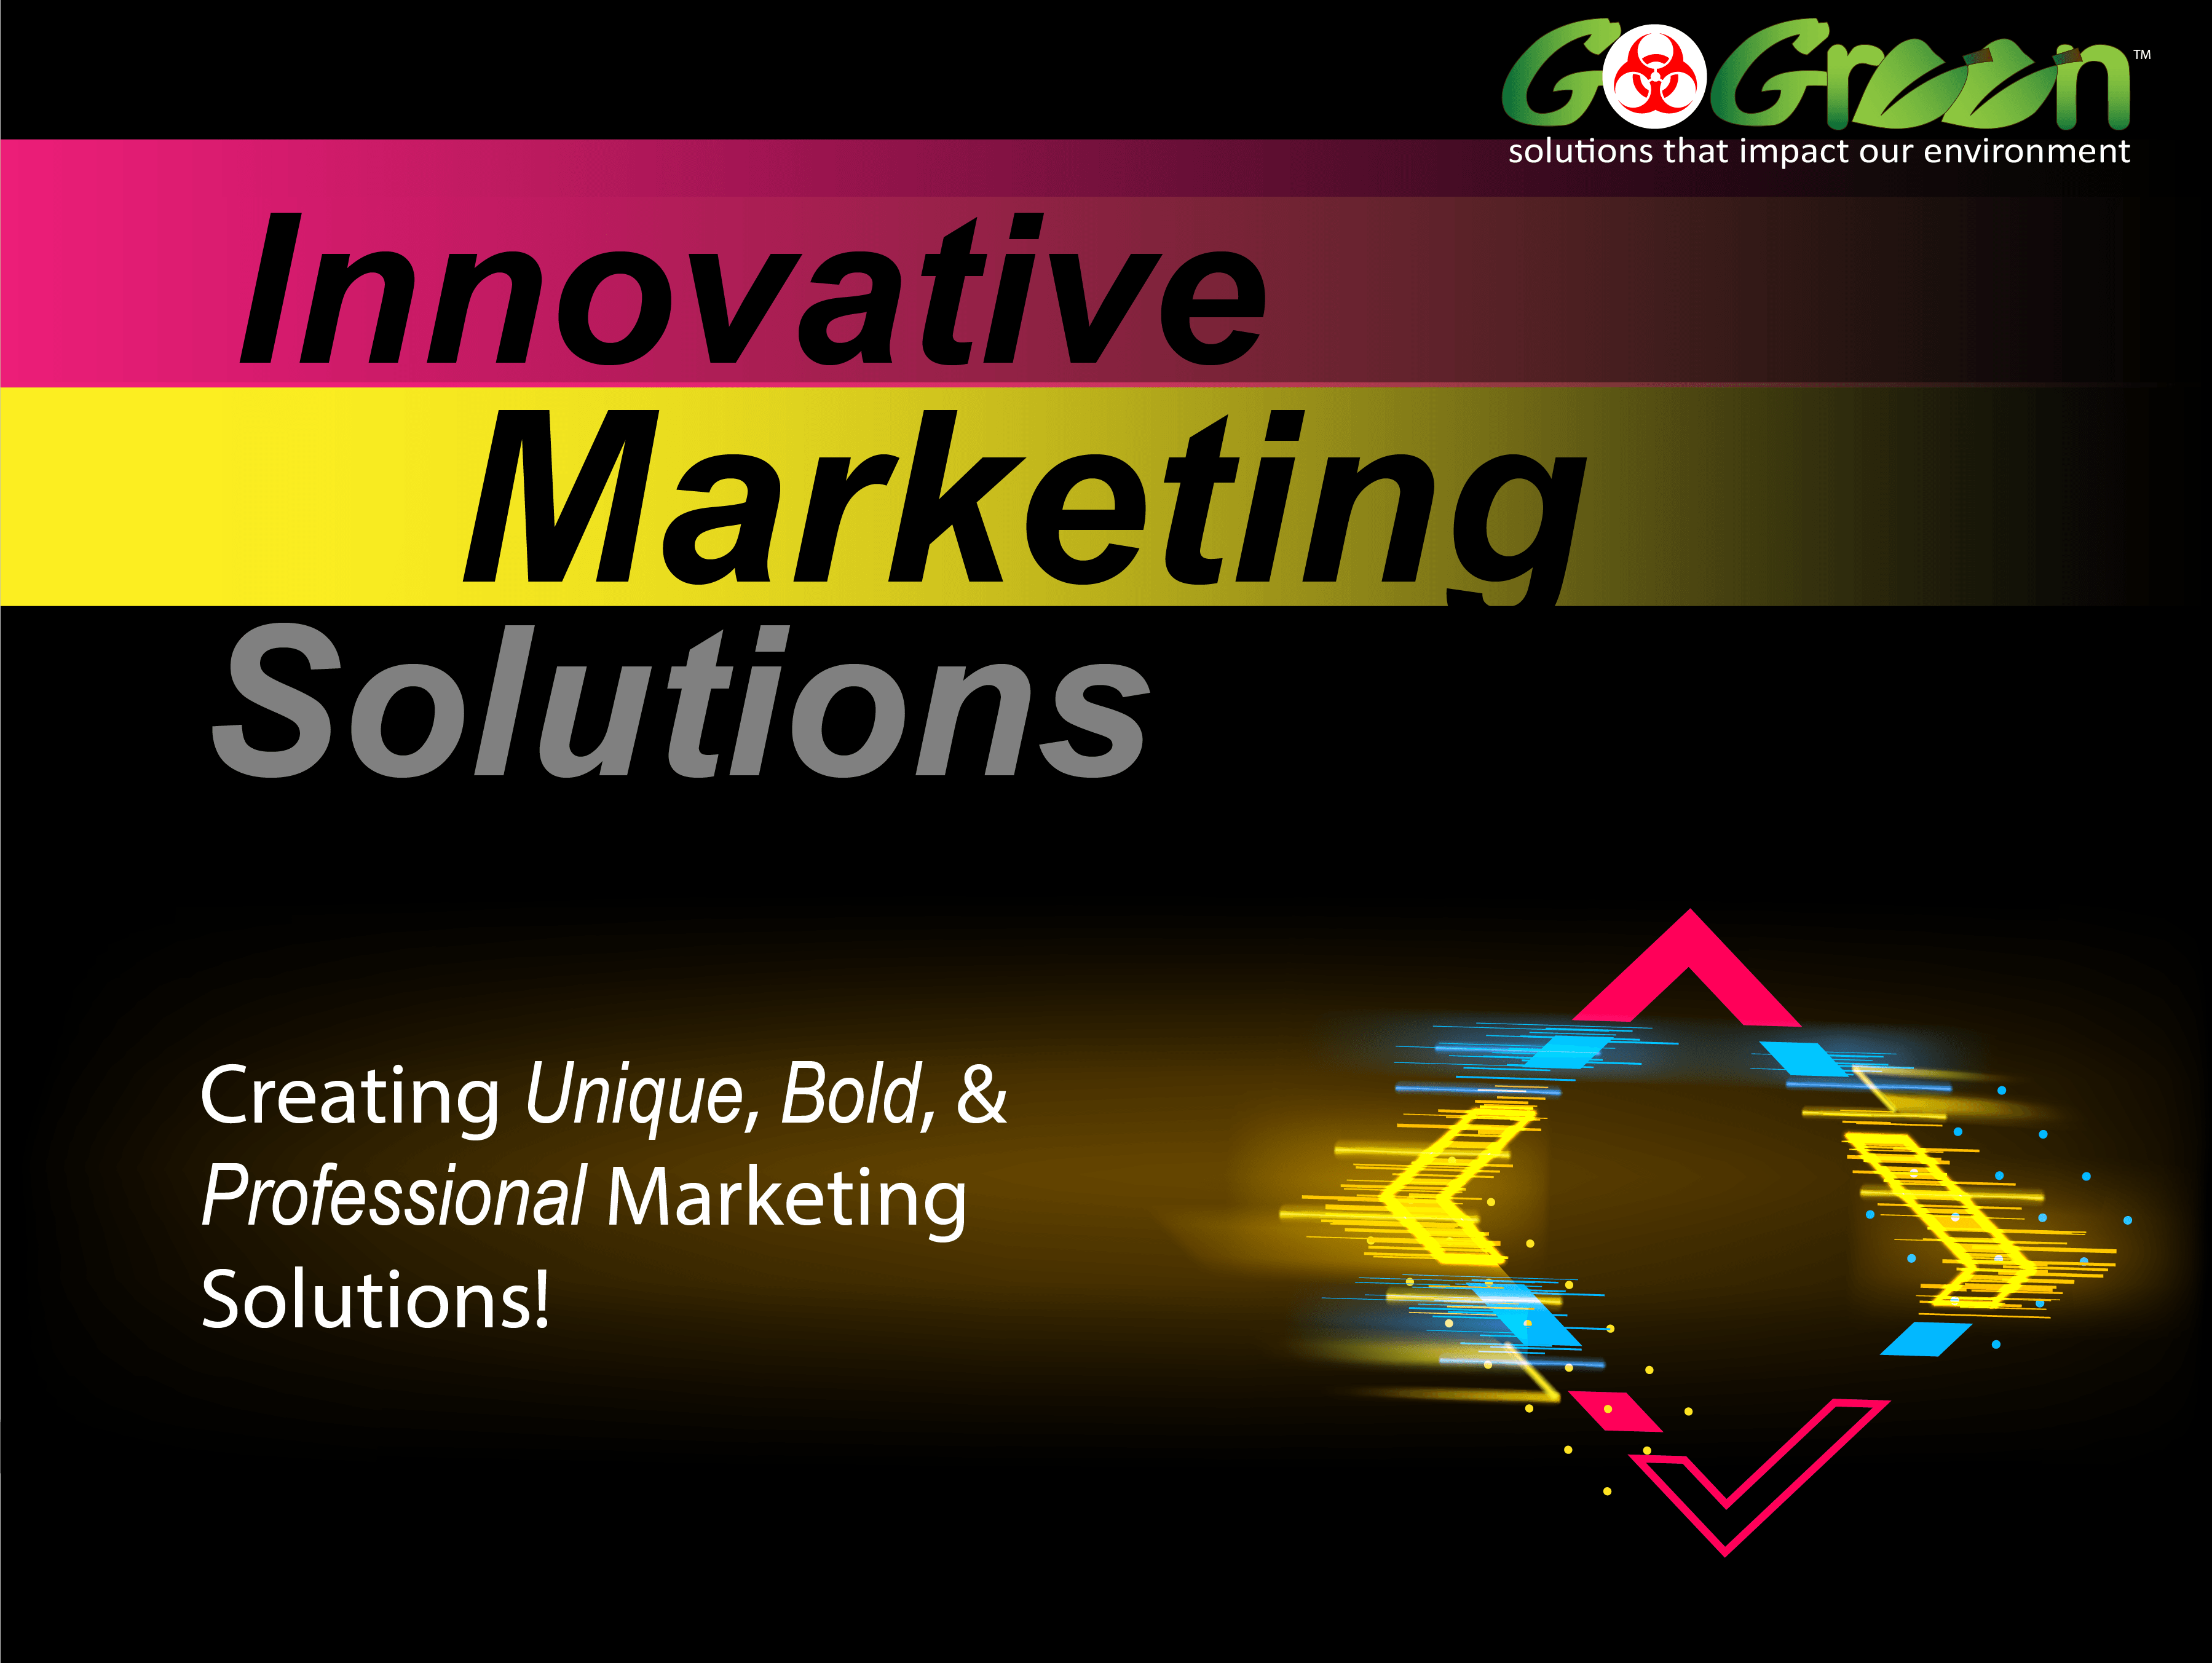 Digital Marketing Solutions - Go Green Solutions, LLC